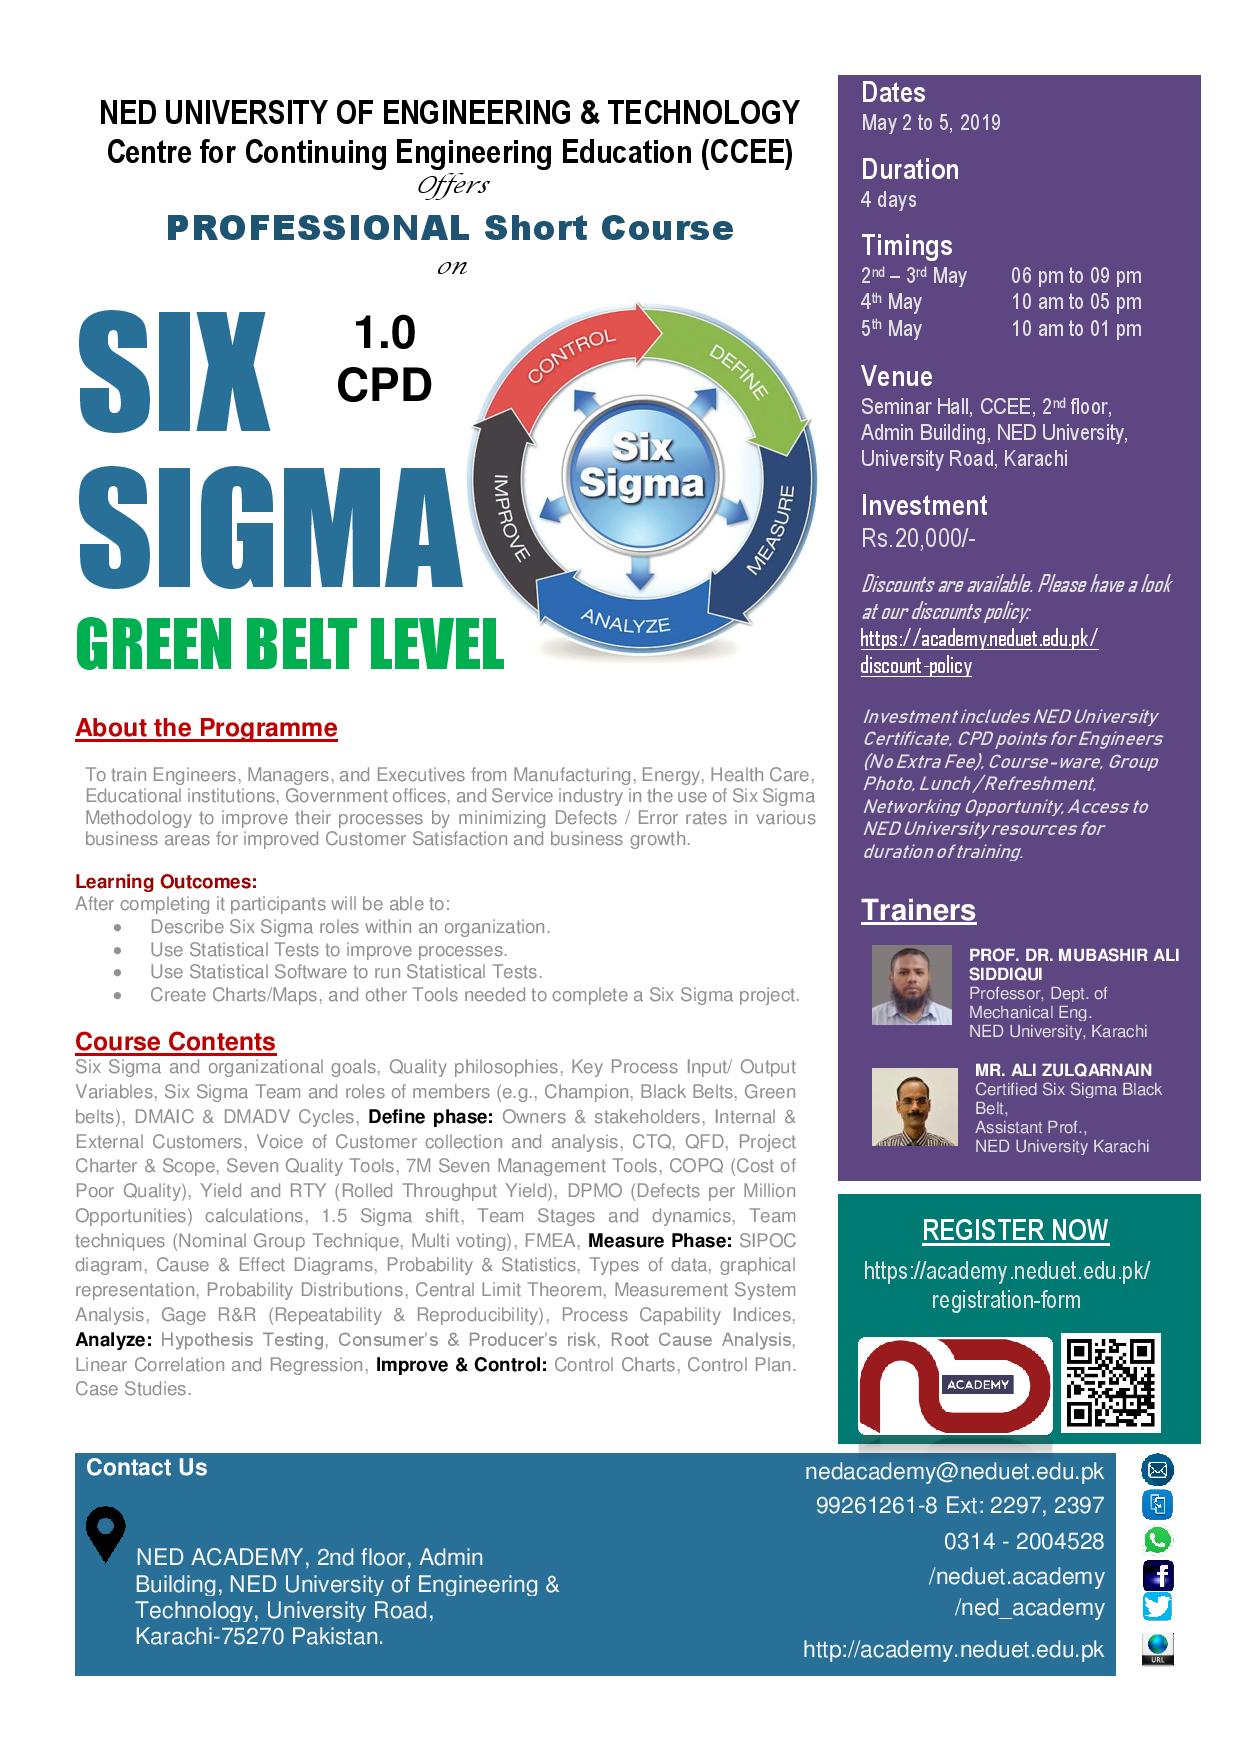 Six-Sigma (Green Belt Level)